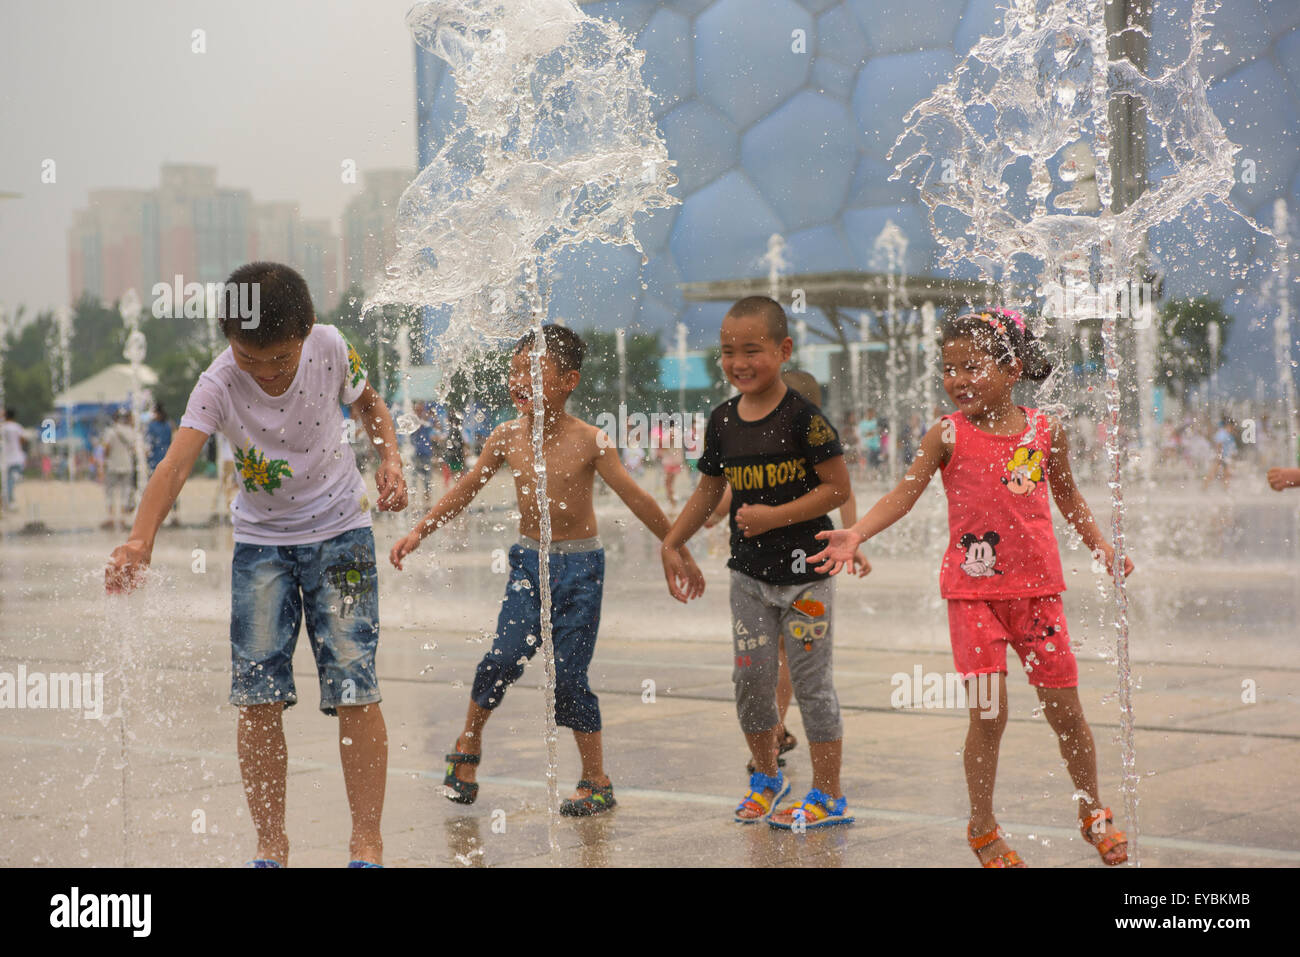 Les enfants s'amusant à jouer parmi les têtes d'eau devant le Cube d'eau au Parc olympique de Beijing - Juillet 2015 Banque D'Images